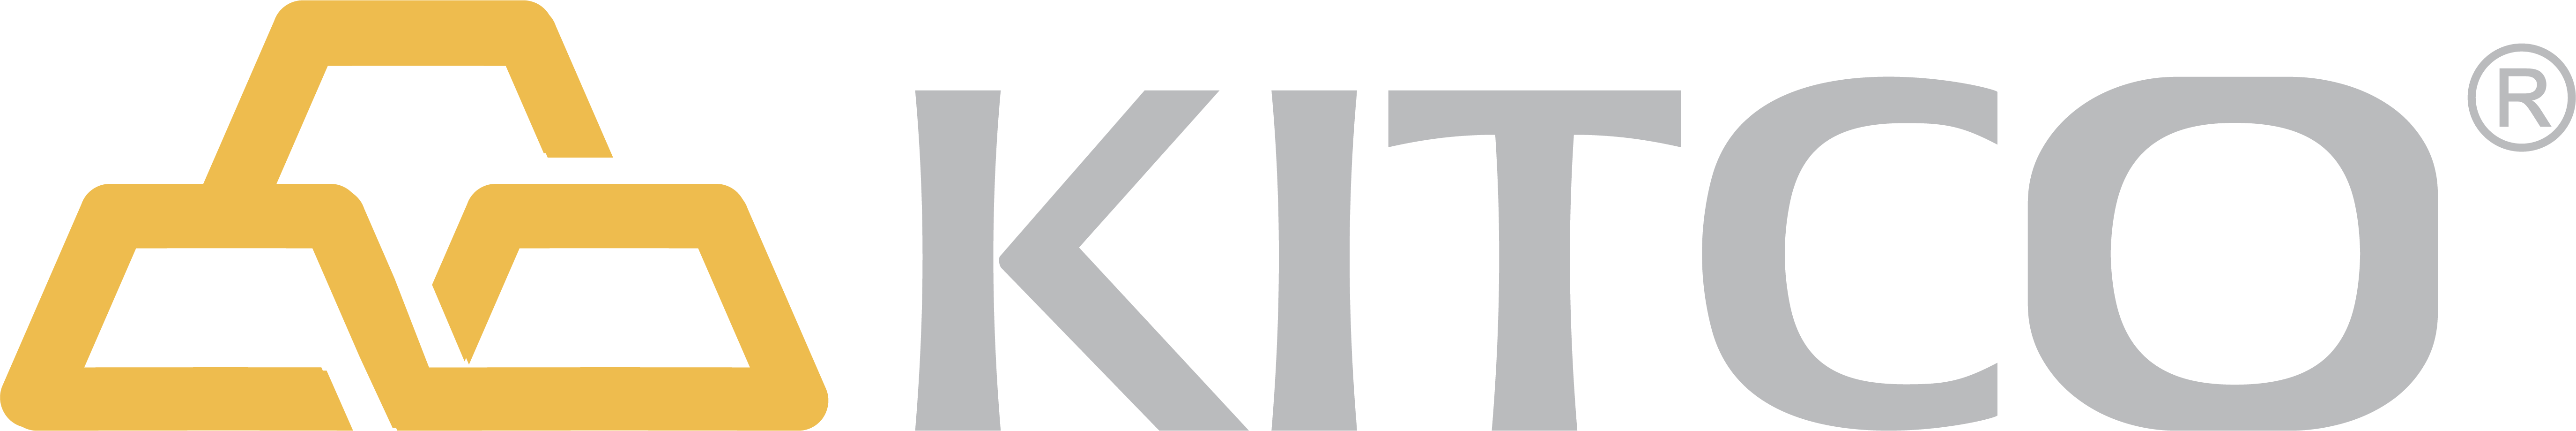 Kitco logo for Kitco.com